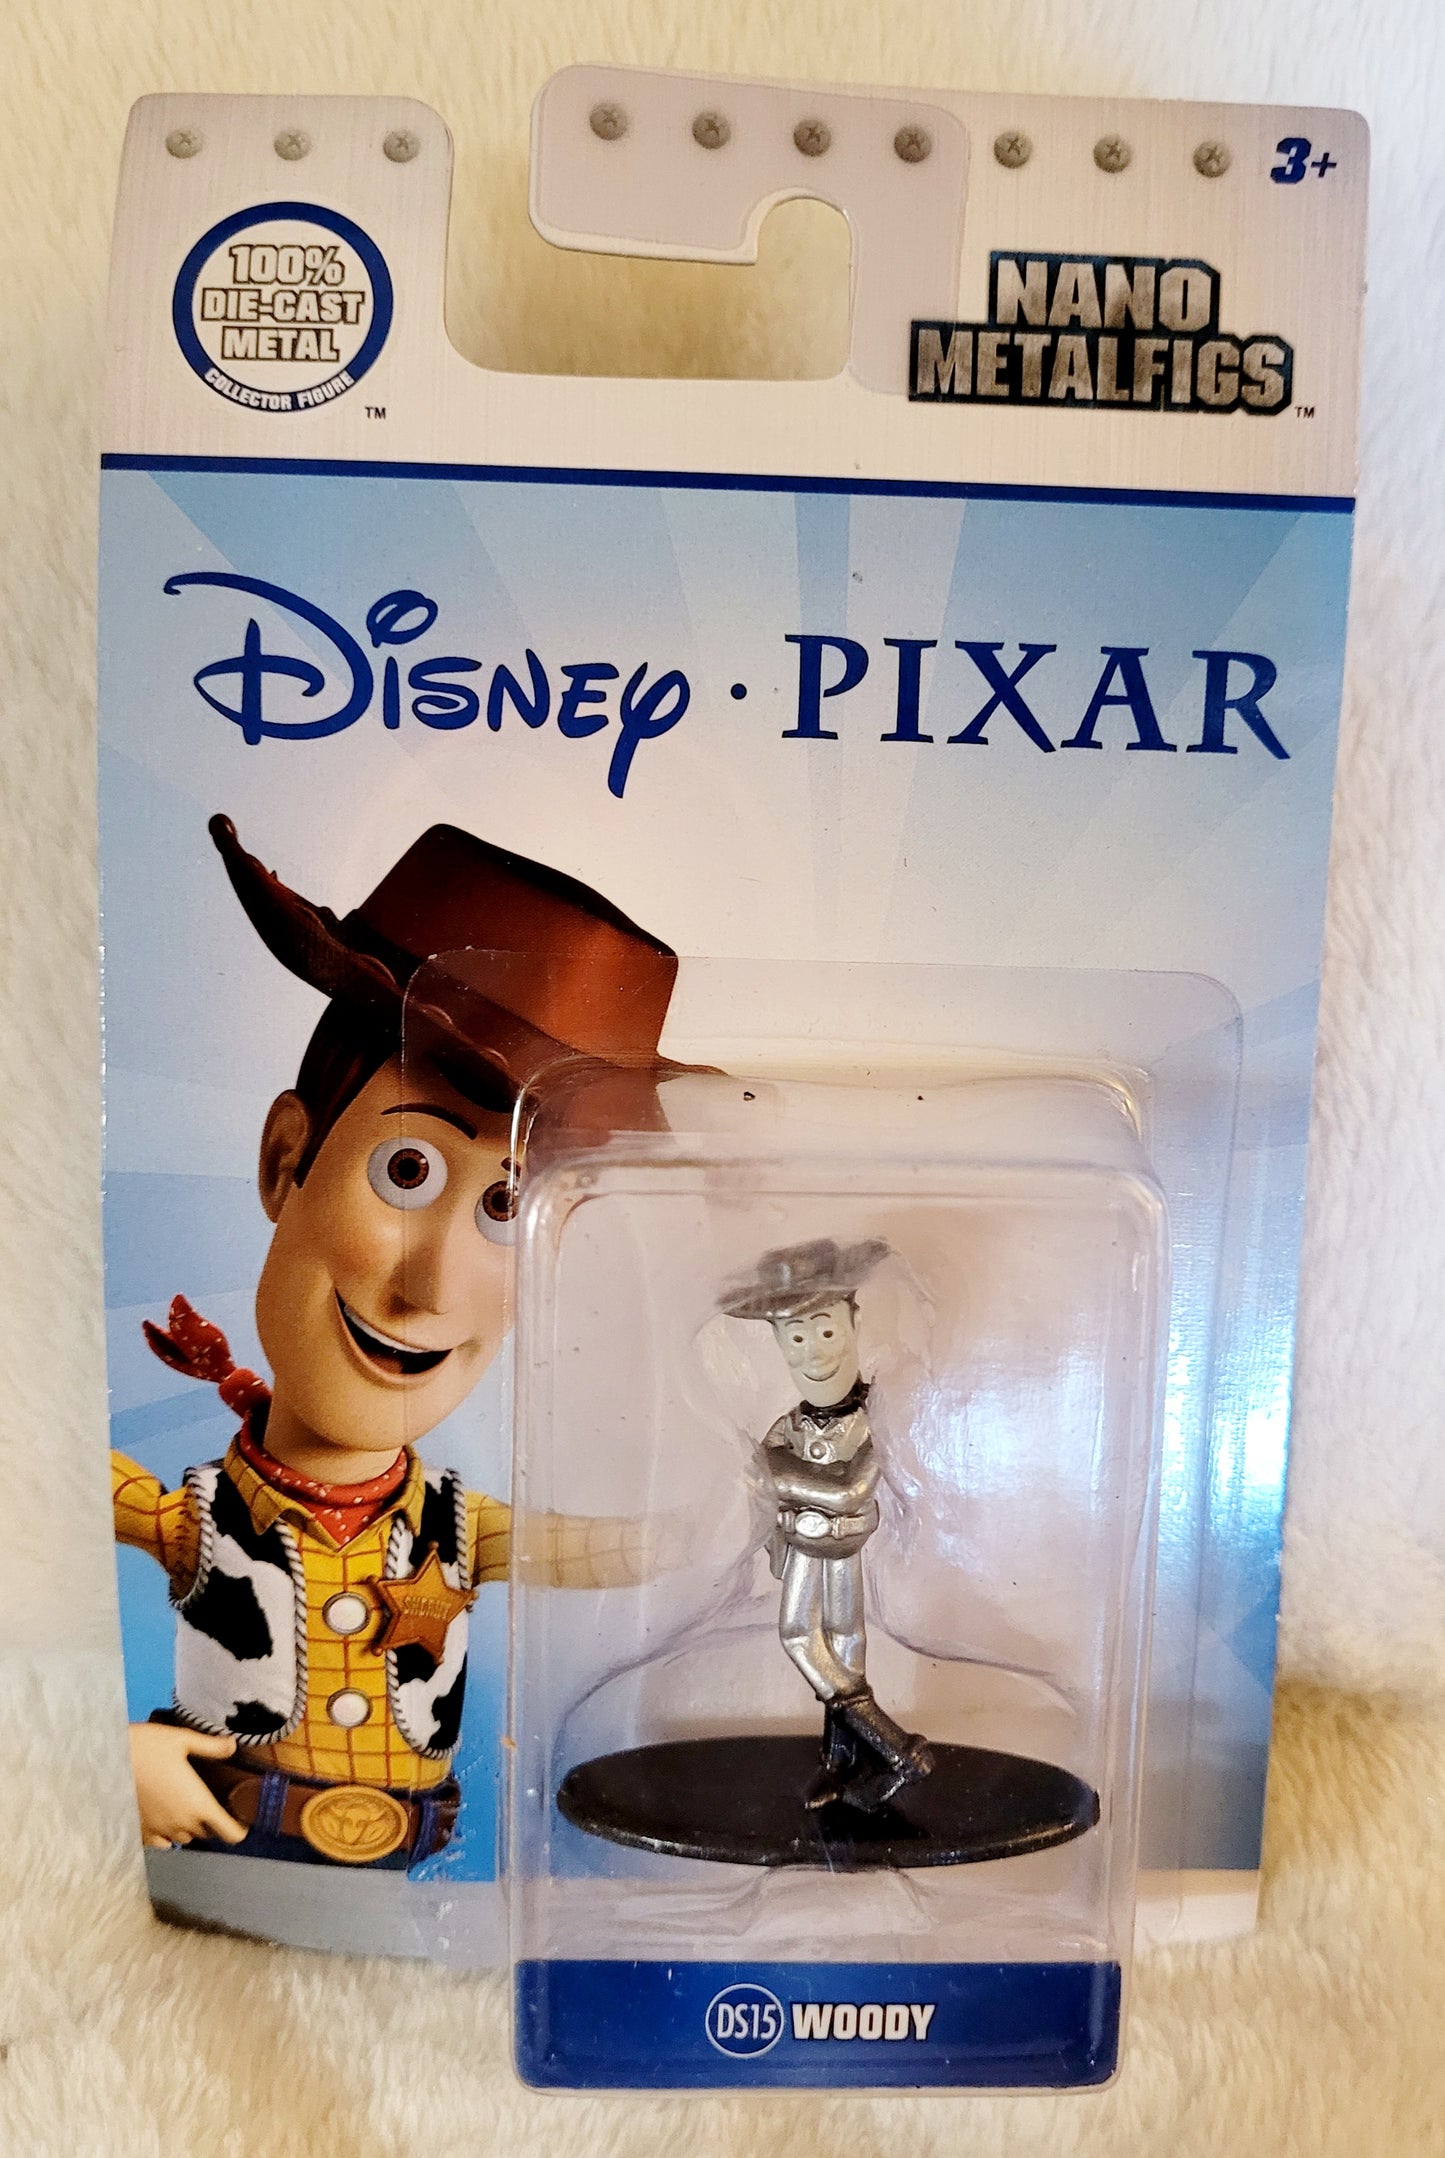 NEW *Disney Pixar Nano MetalFigs "Woody" Die-Cast